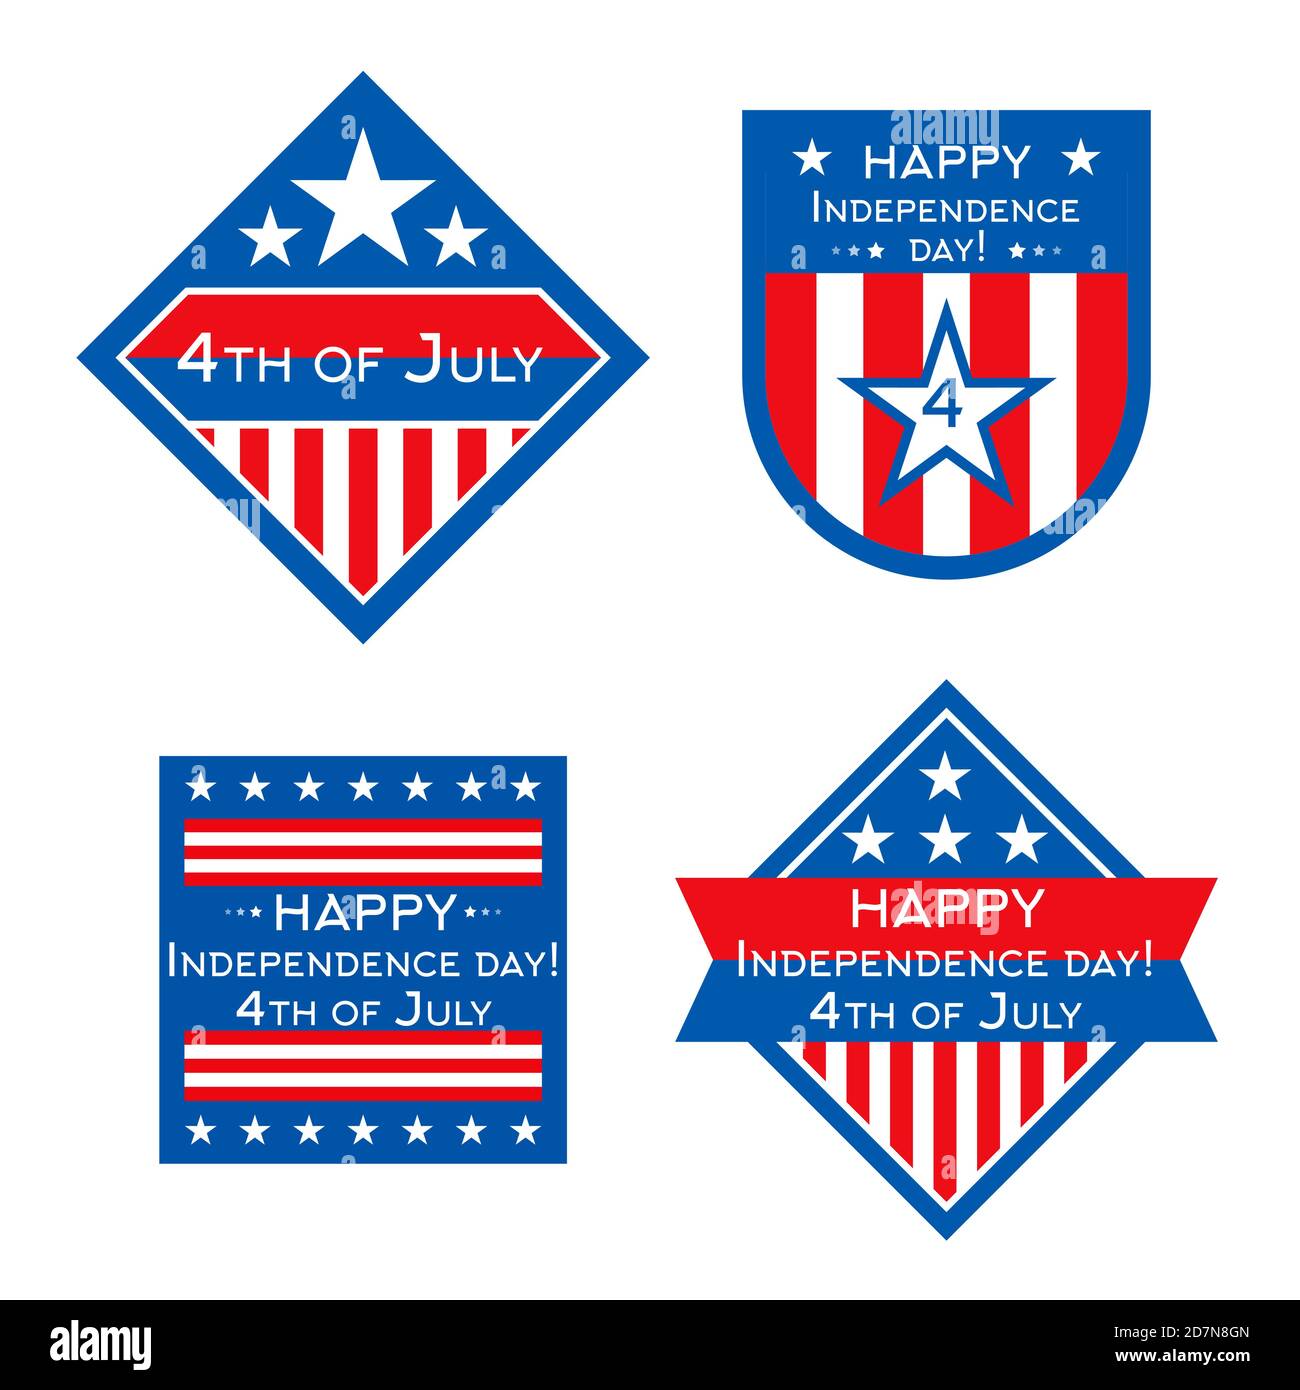 Die USA Independence Day Vektor Abzeichen oder Etiketten Design-Set. Amerikanischer Unabhängigkeitstag, 4. Jule Aufkleber Emblem Illustration Stock Vektor